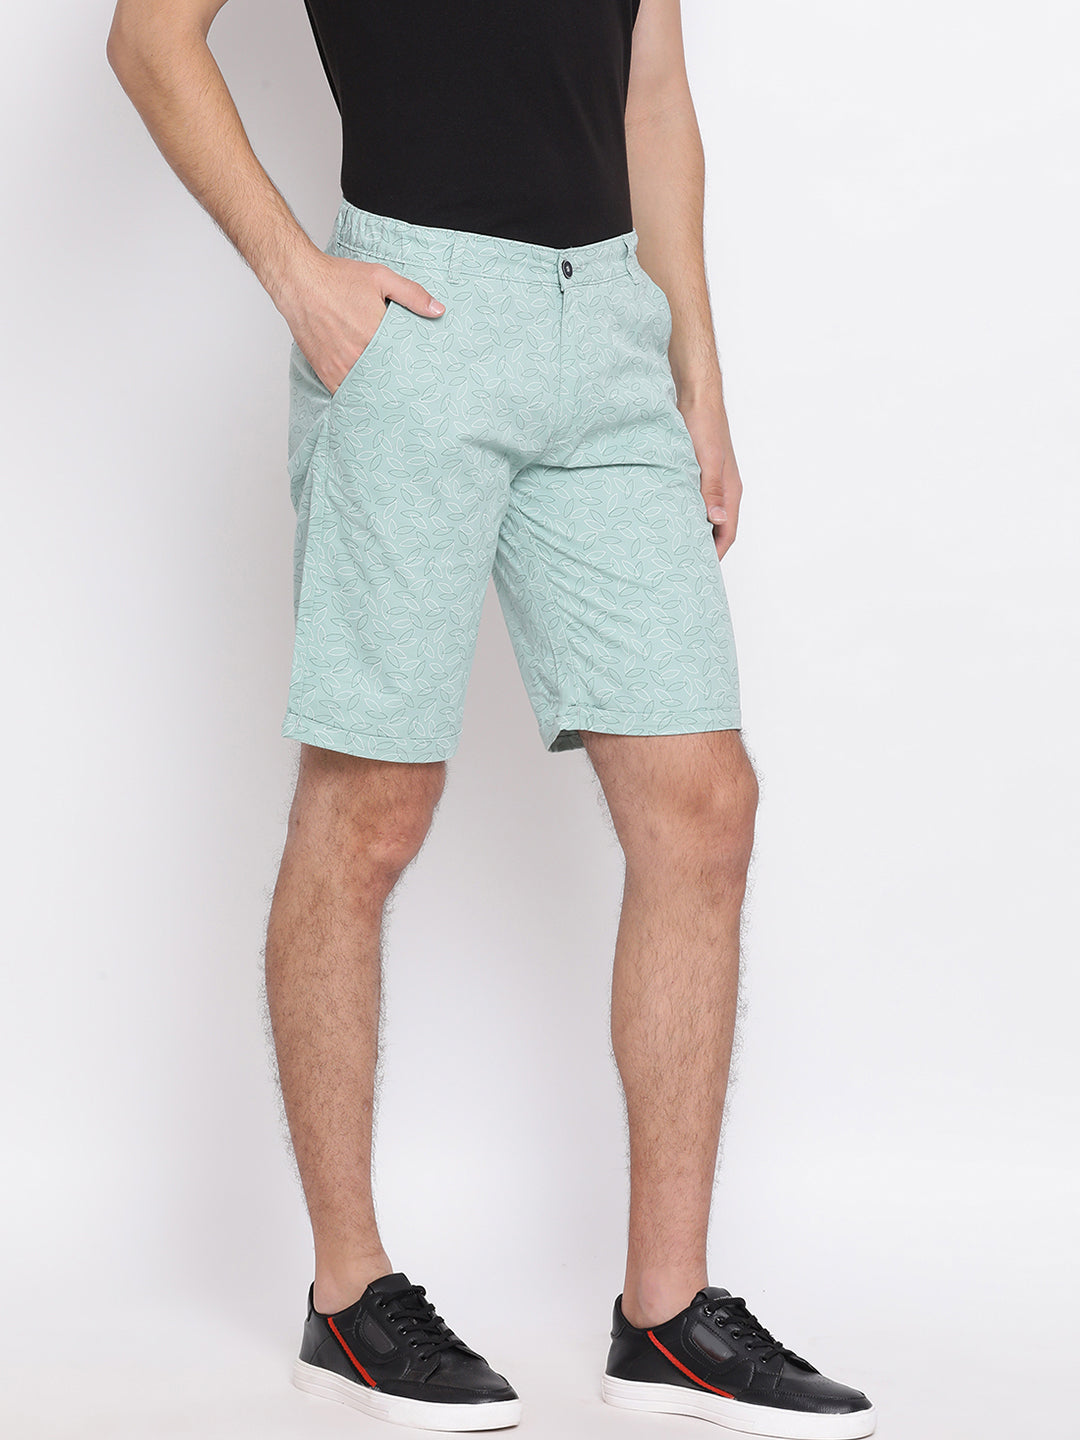 Green Printed shorts - Men Shorts